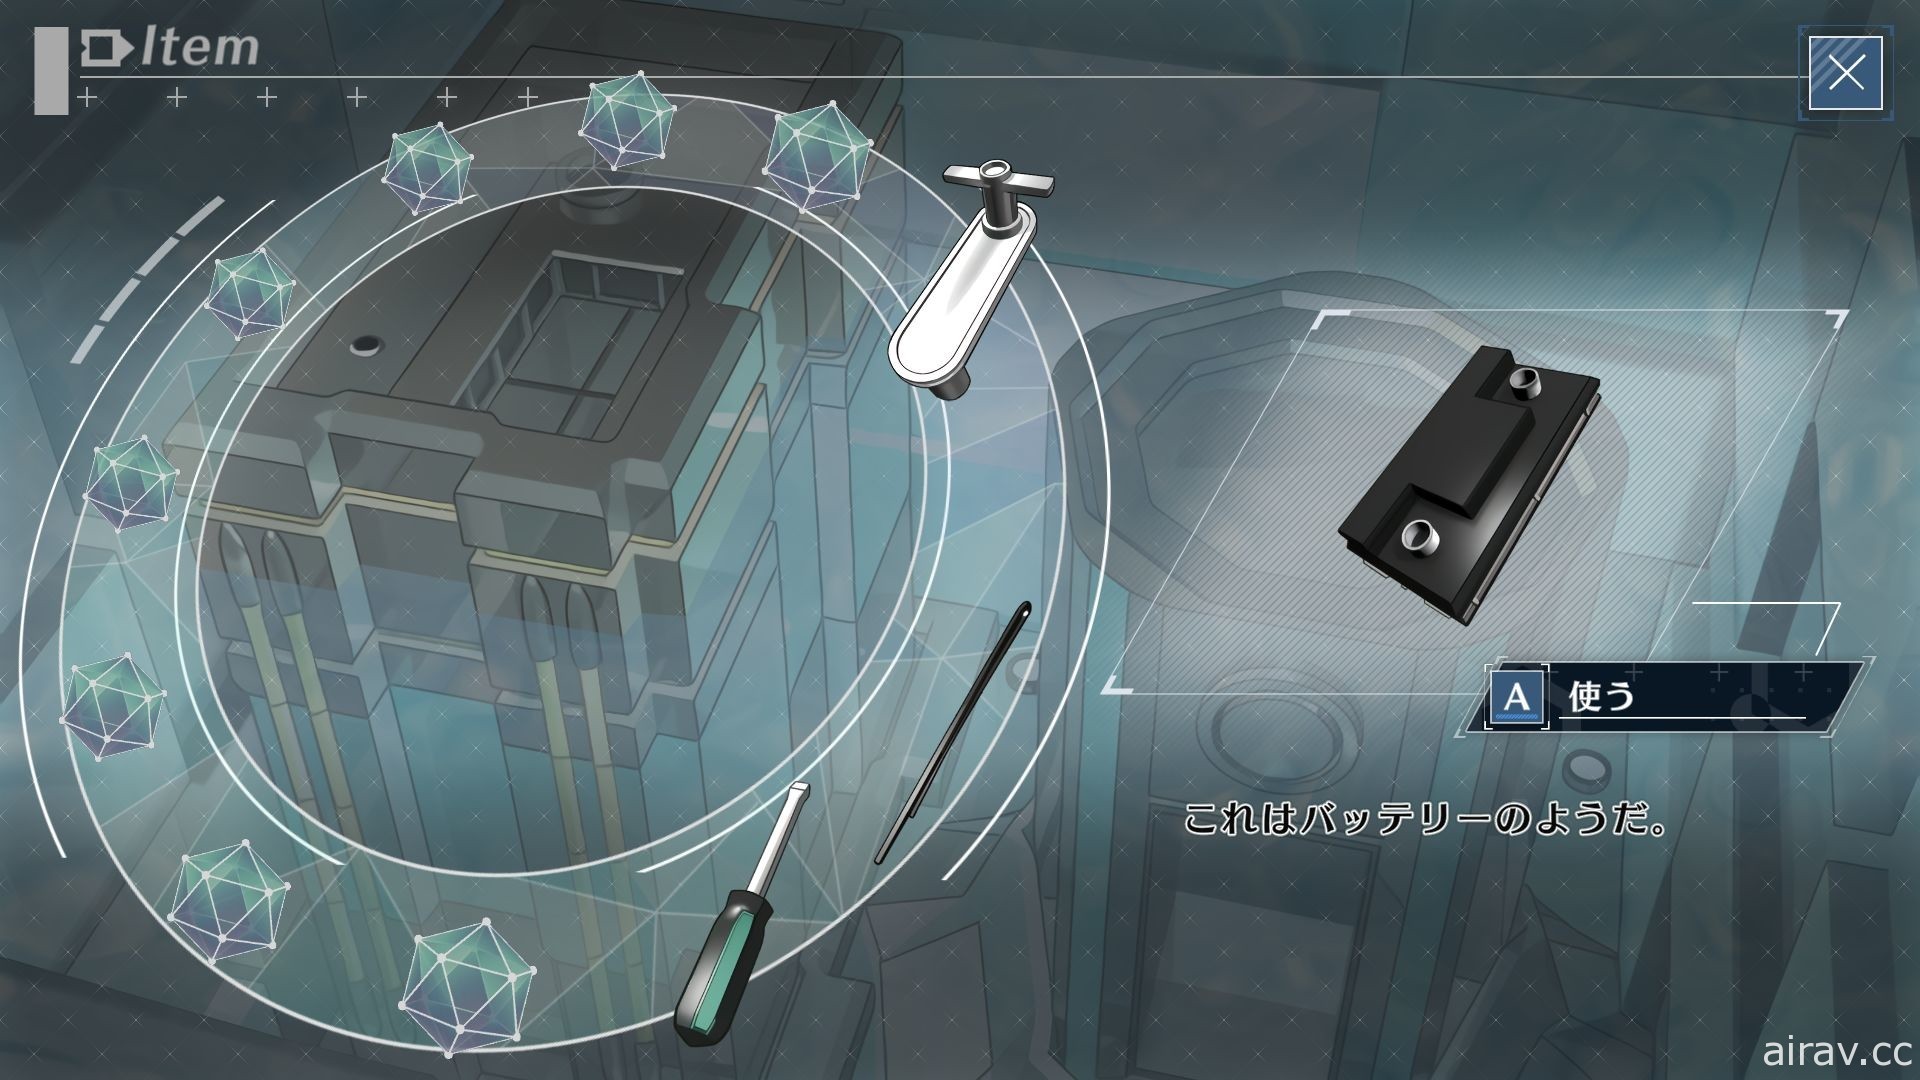 以 PSP 版为基础移植之新作《密室牺牲者》12 月中发售 新增提示功能、画廊模式